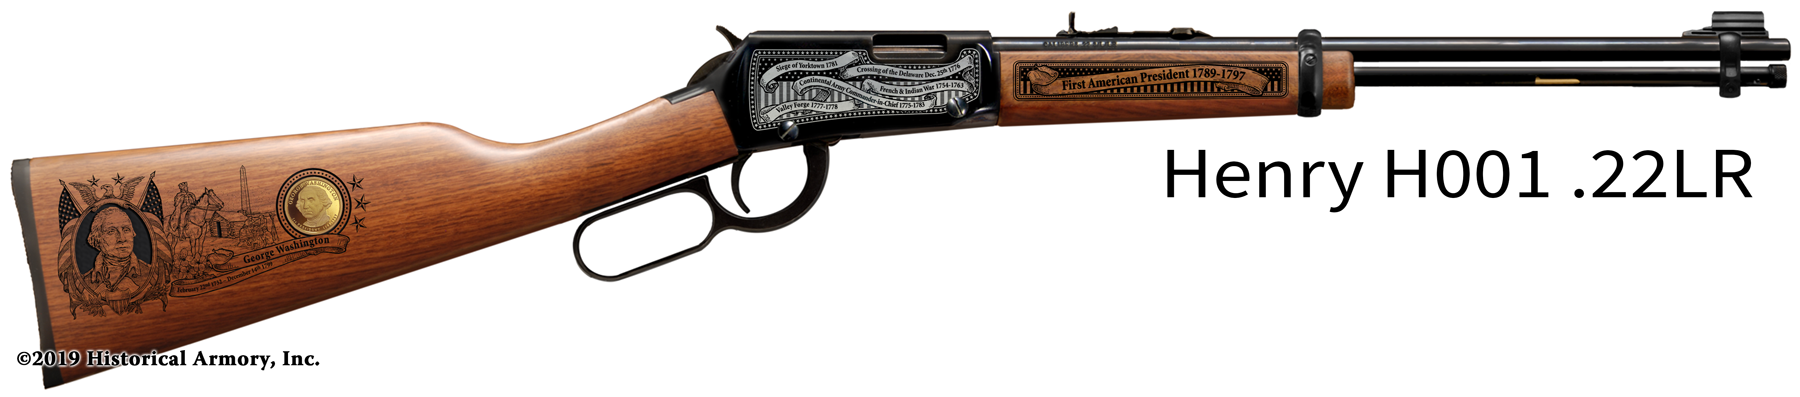 George Washington Engraved Rifle